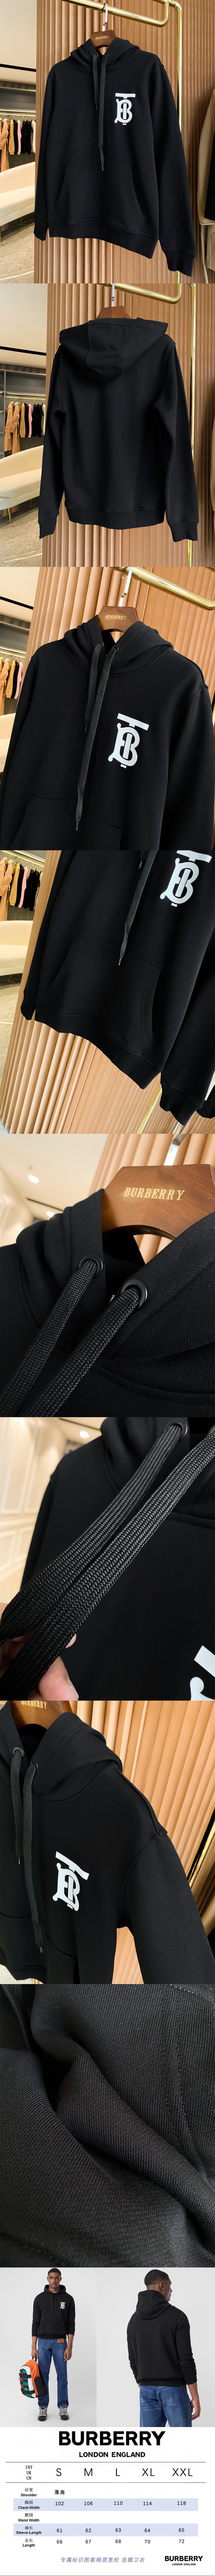 Burberry 專櫃經典系列大學T 爆款來襲 時尚百搭超好看0